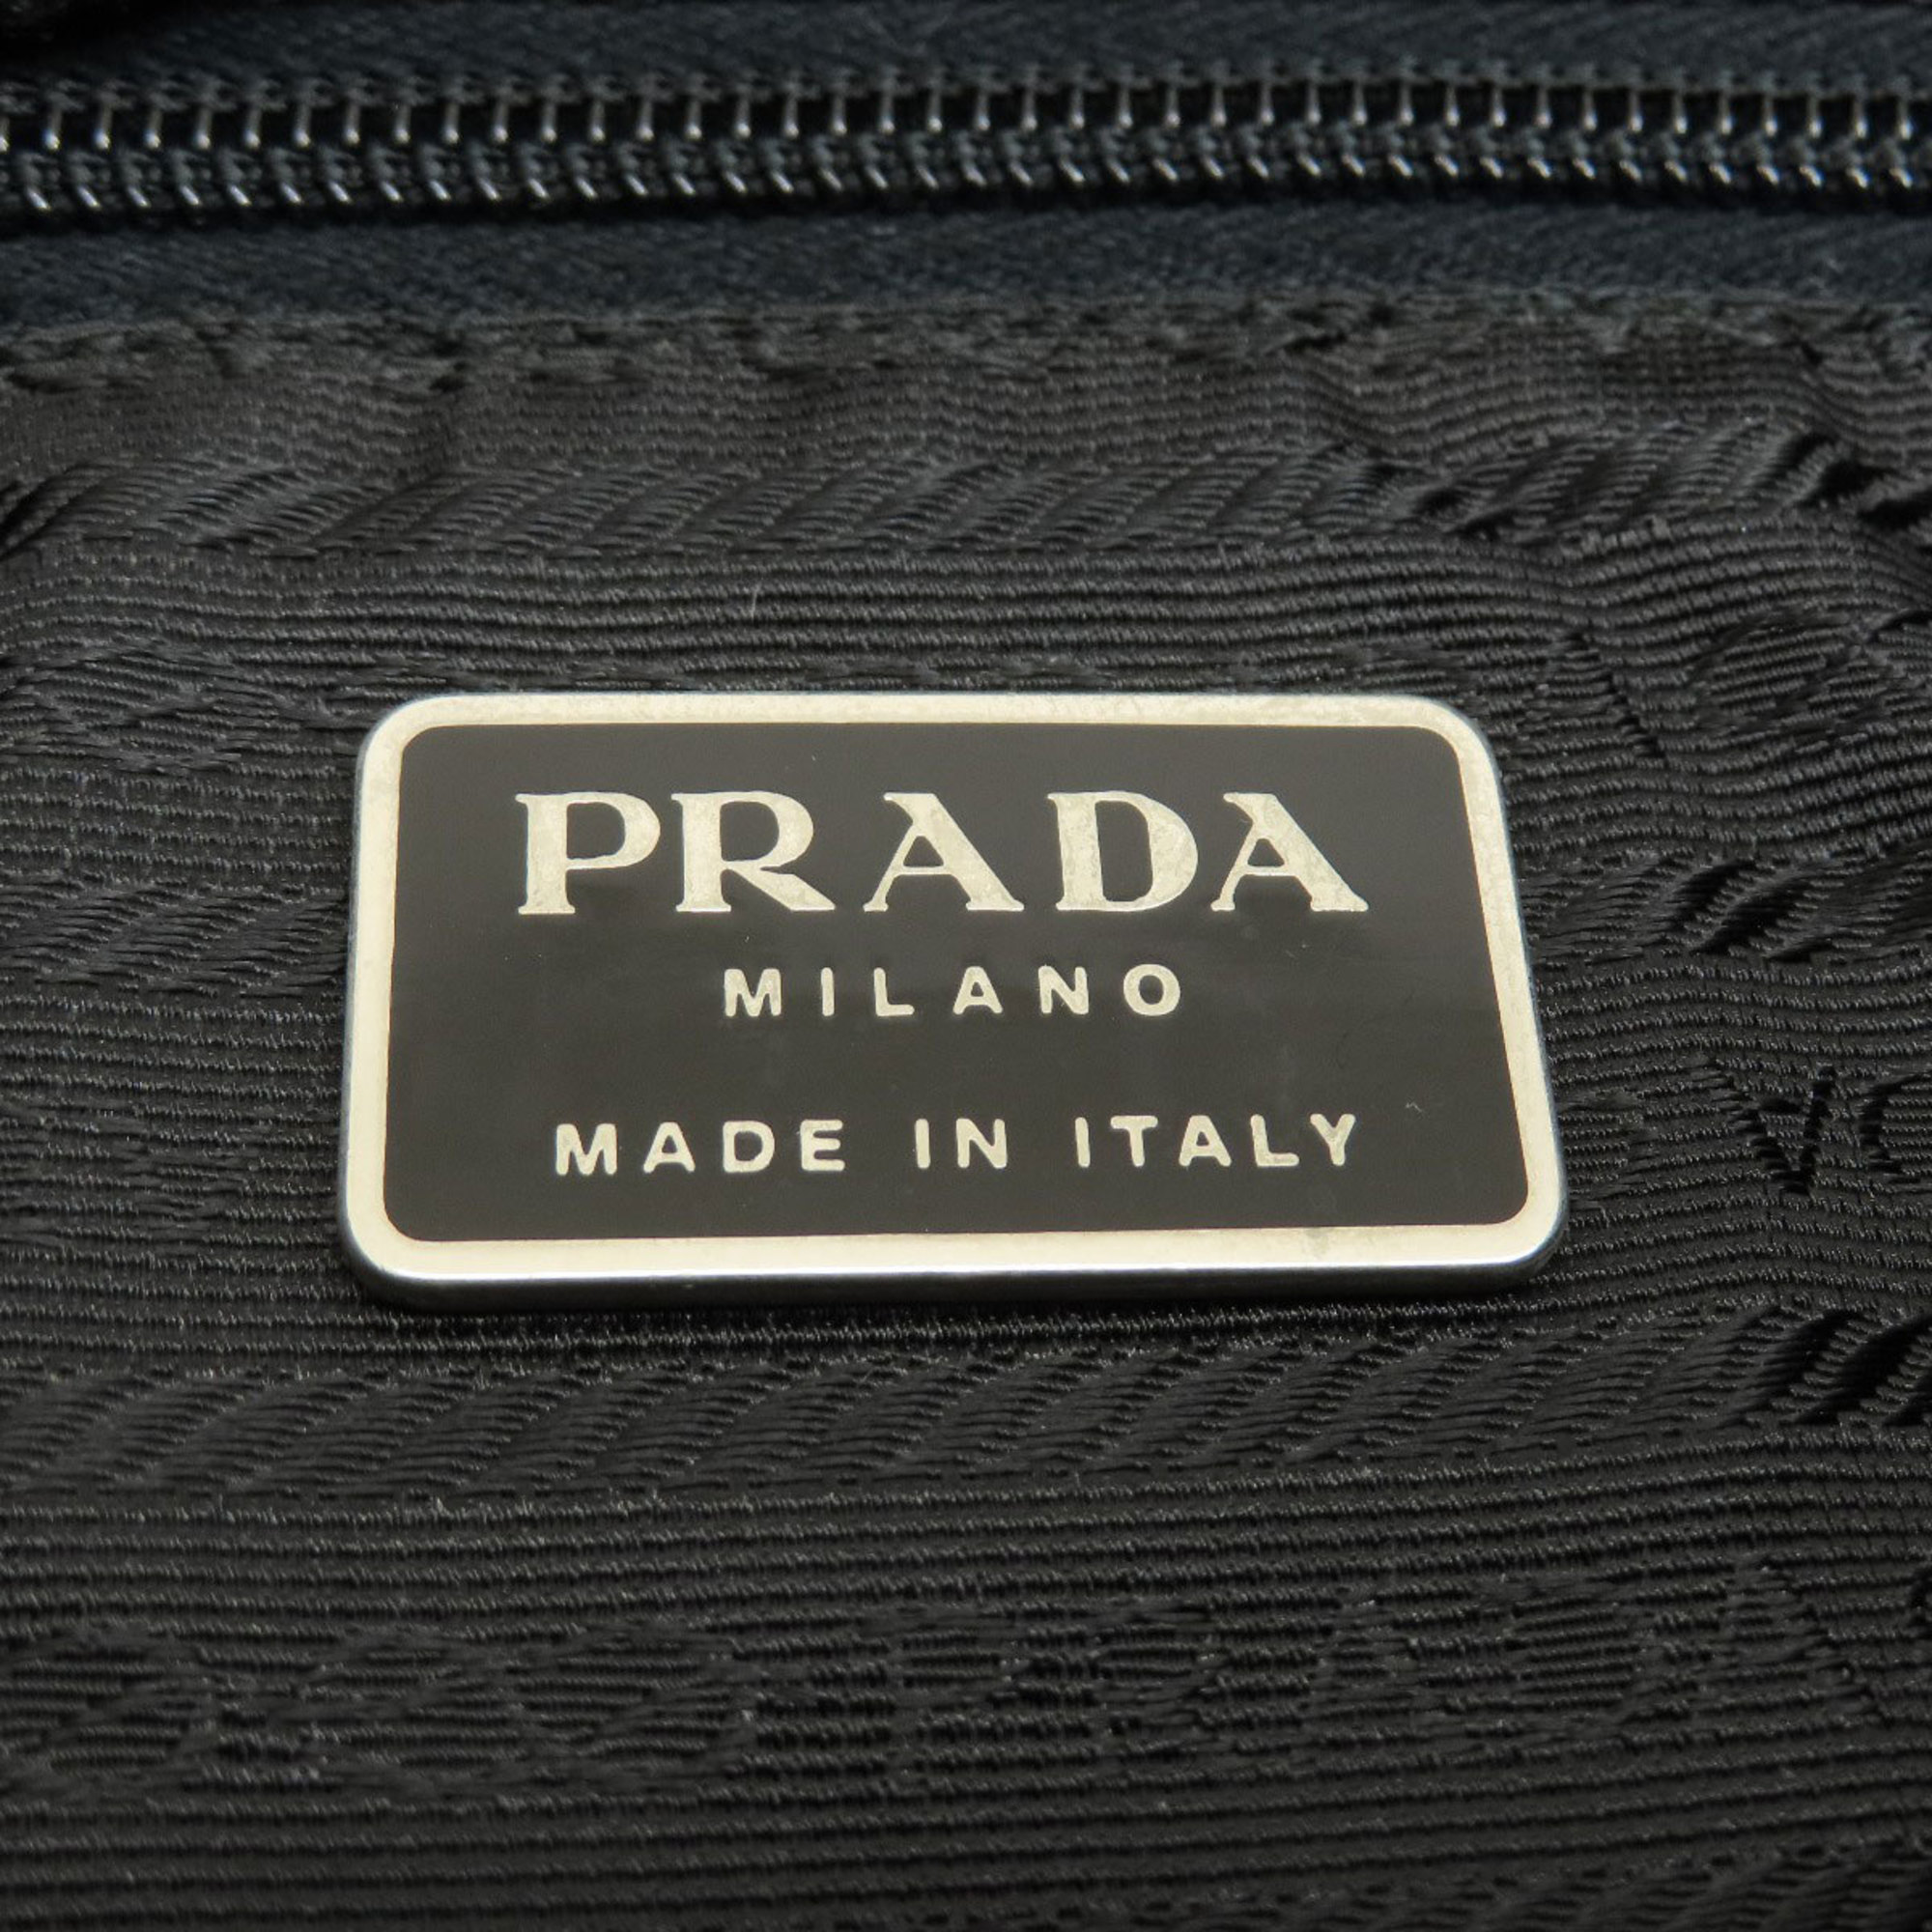 Prada metal tote bag nylon material women's PRADA